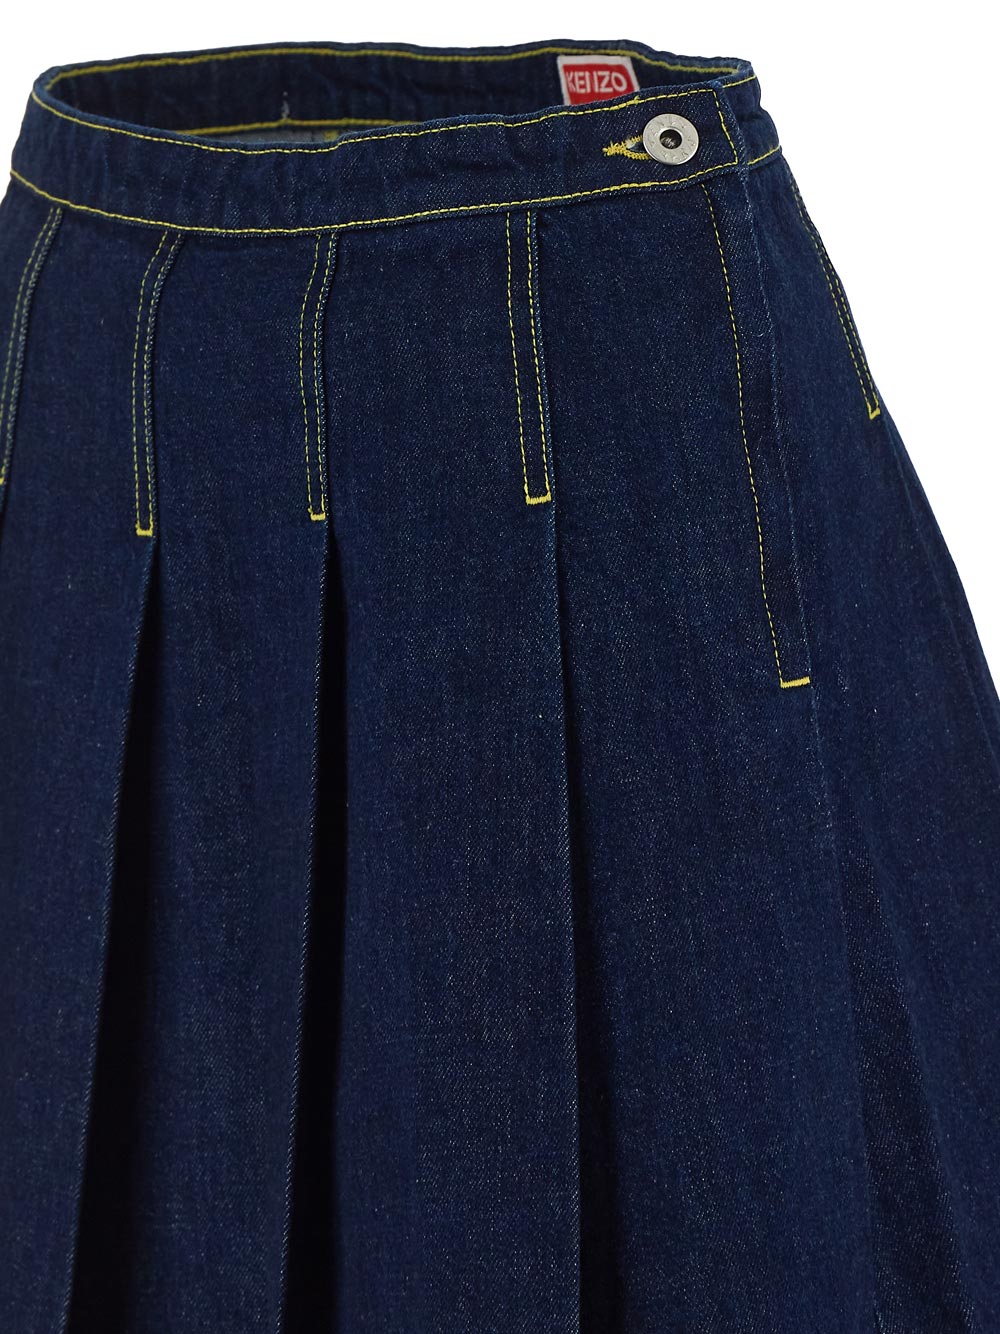 Kenzo Short Skirt